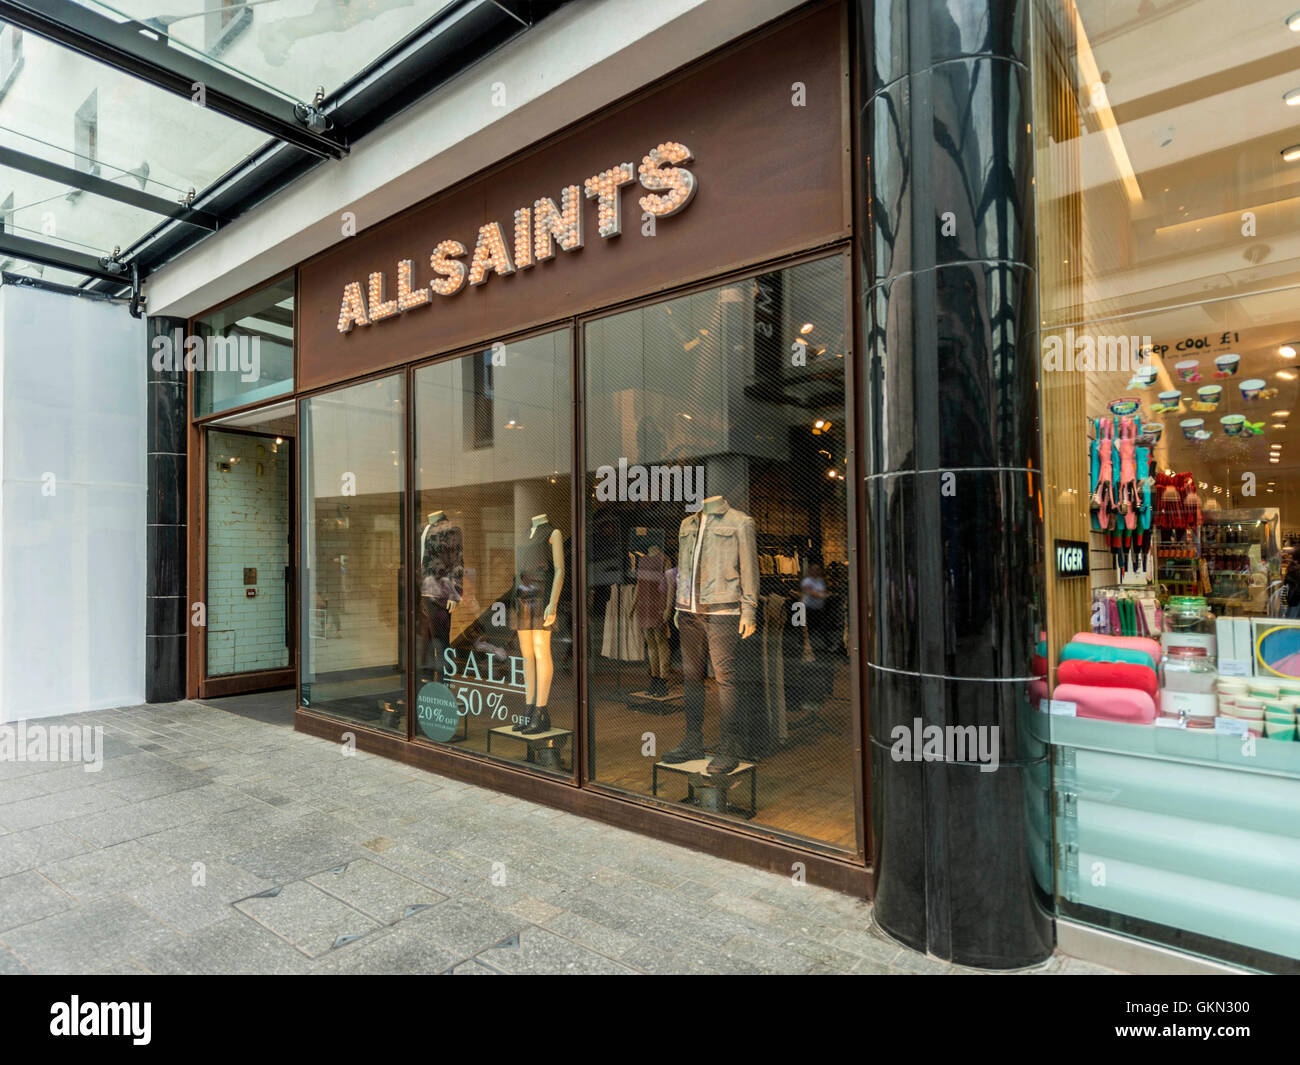 Allsaints Retail Outlet, Exeter City Centre, Devon Stock Photo - Alamy